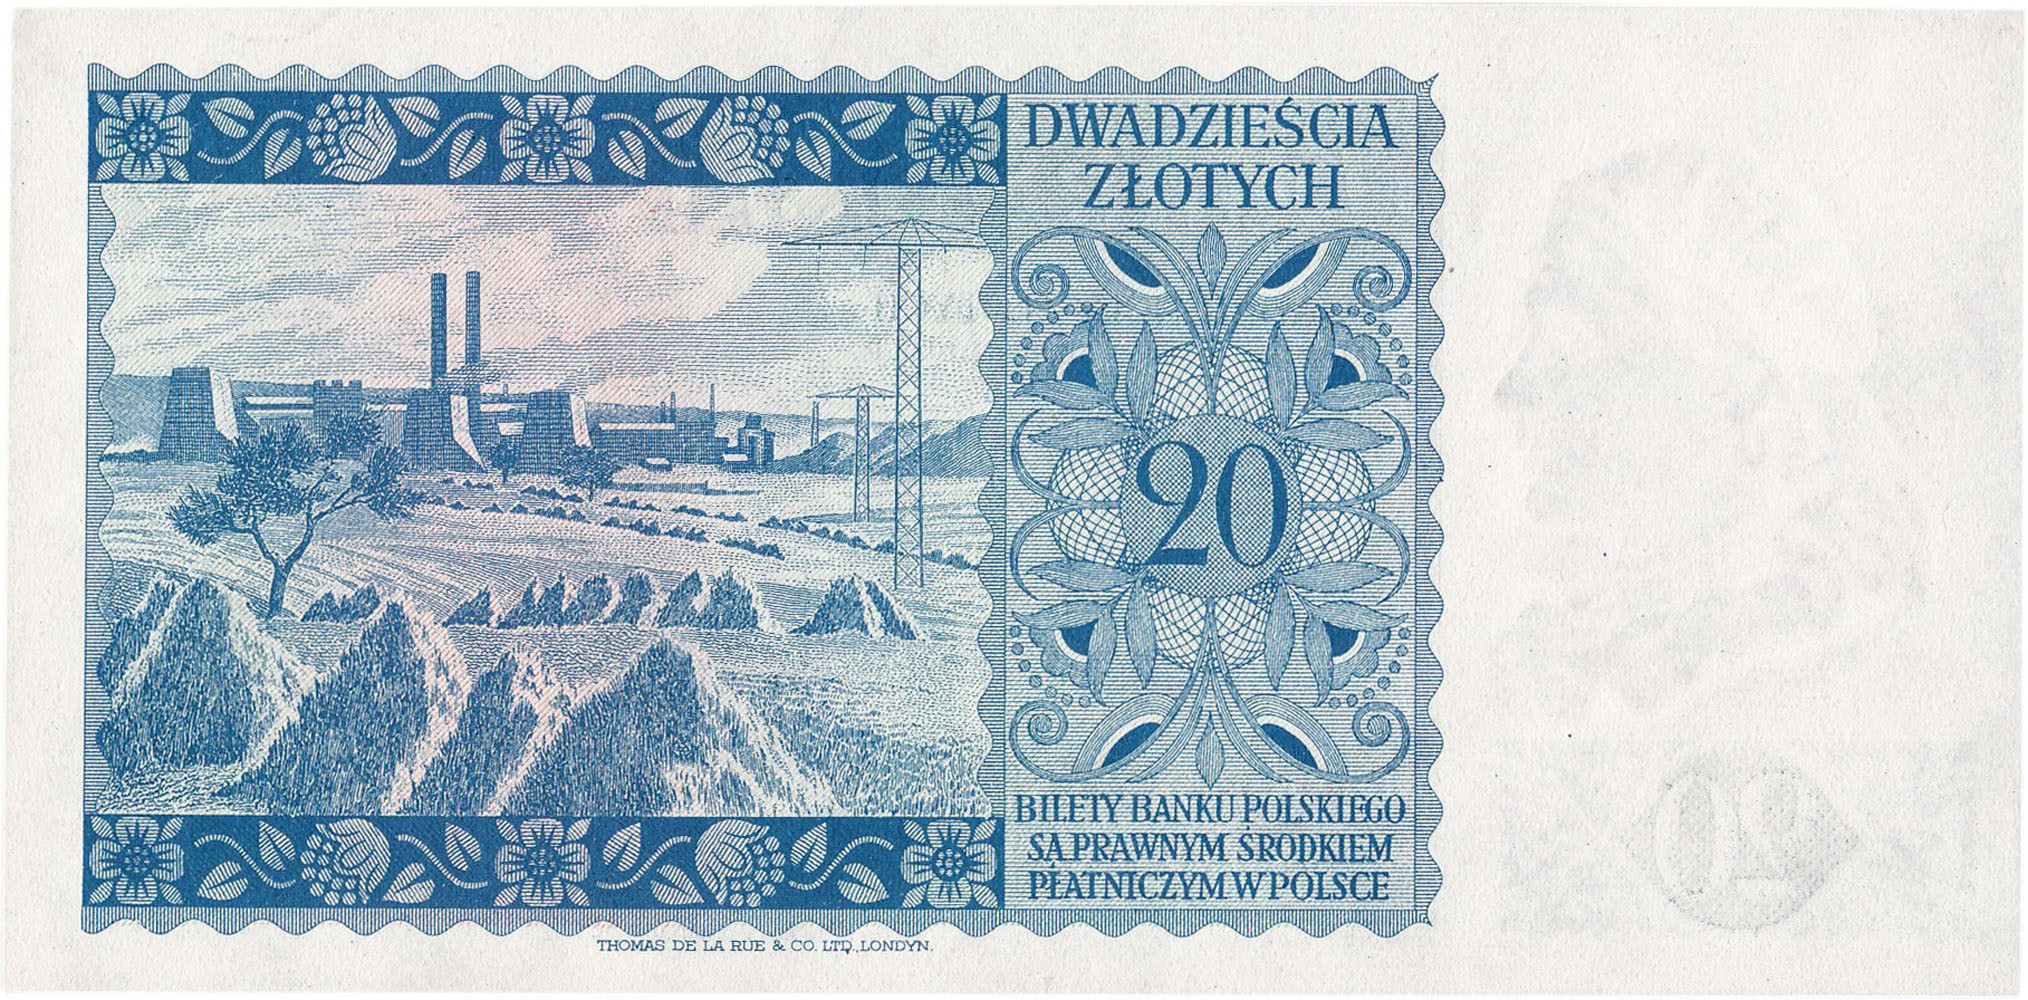 Emigracja 20 złotych 1939 seria L - RZADKOŚĆ R6